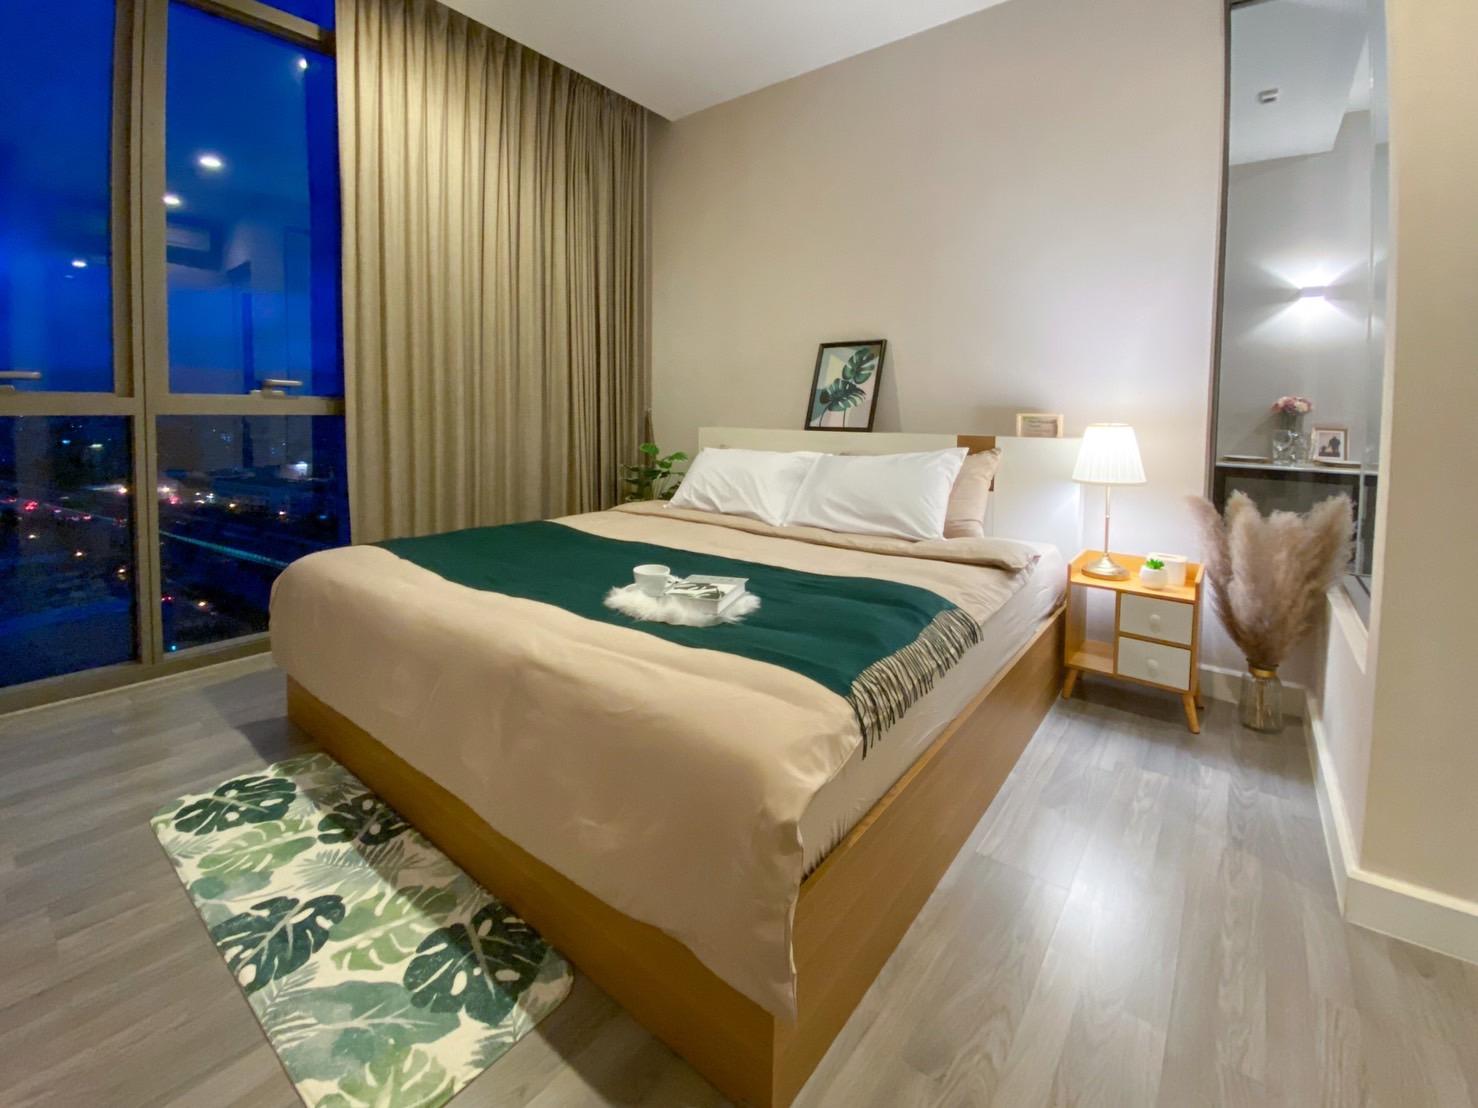 ขายคอนโด เดอะ รูม บีทีเอส วงเวียนใหญ่ คอนโดมิเนียม - Sell Condo The Room BTS Wongwian Yai condominium - 2677938